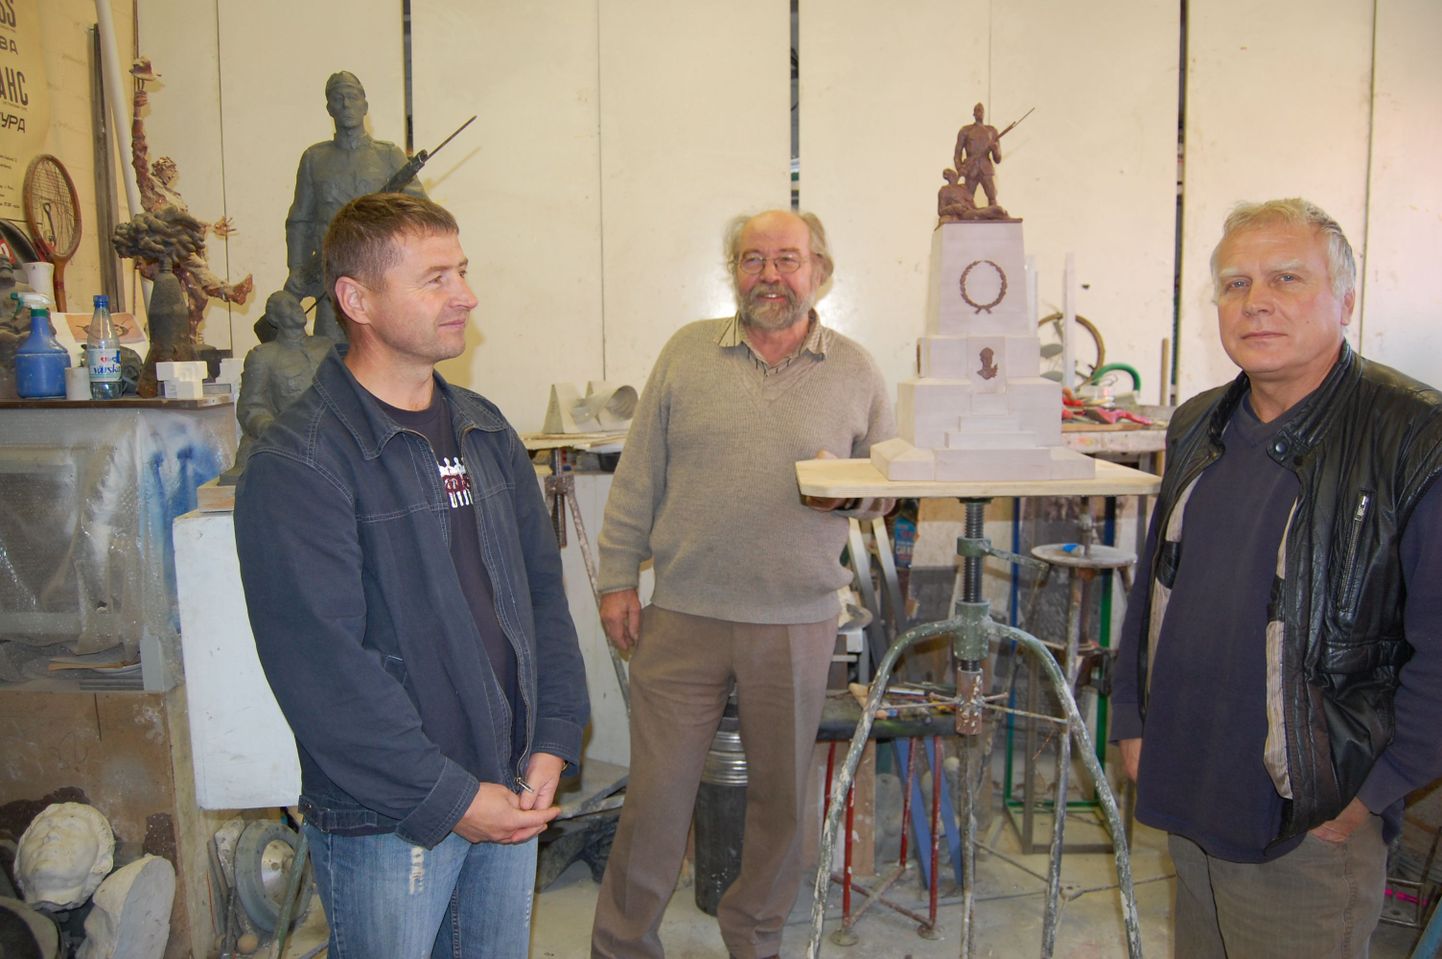 Макет памятника "Парни из Тонди" и его авторы (слева направо) Иван Зубака, Яак Соанс и Георг Коттер.